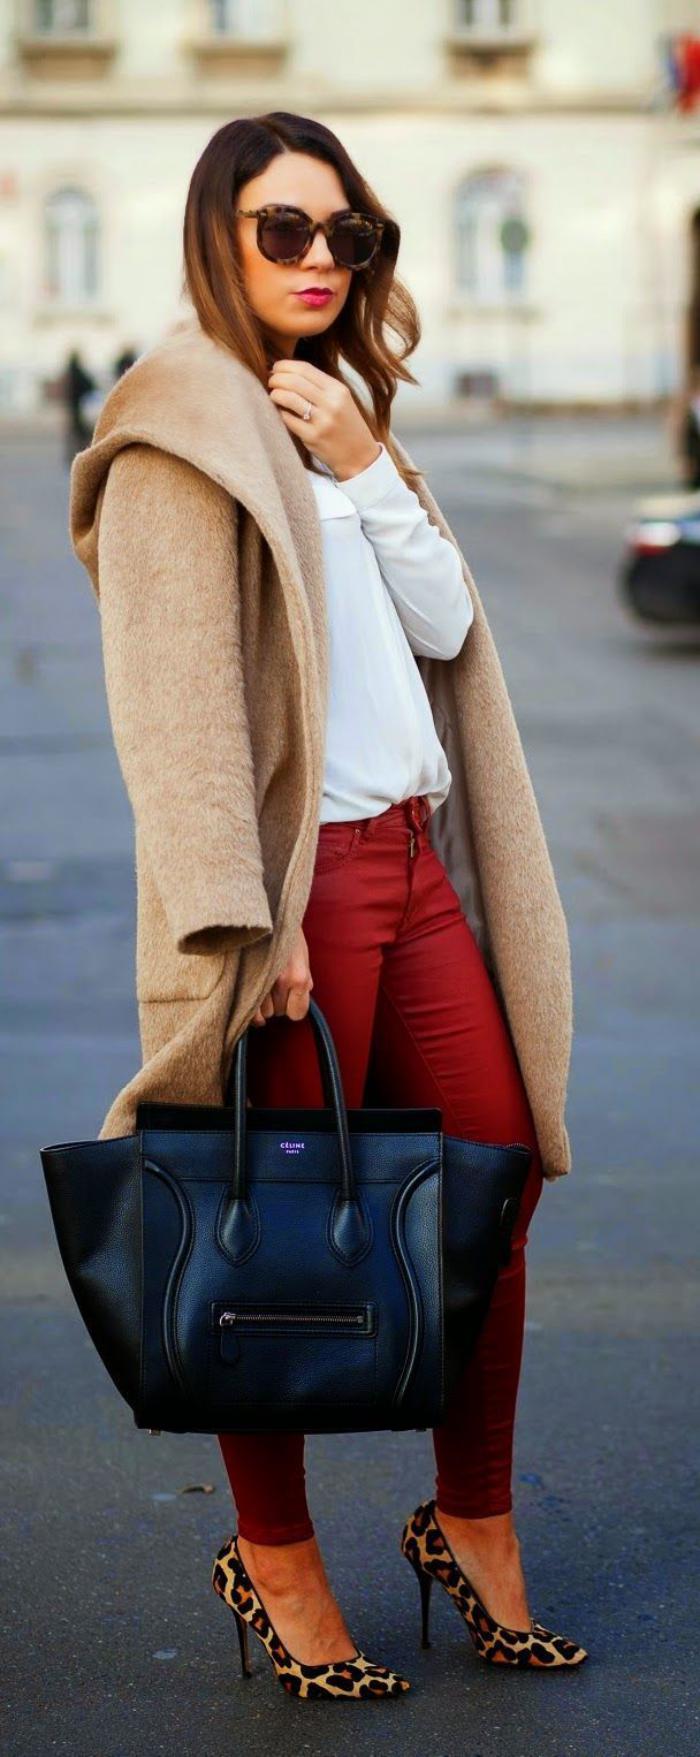 冬季外套女装焦糖色红裤鞋动物纹